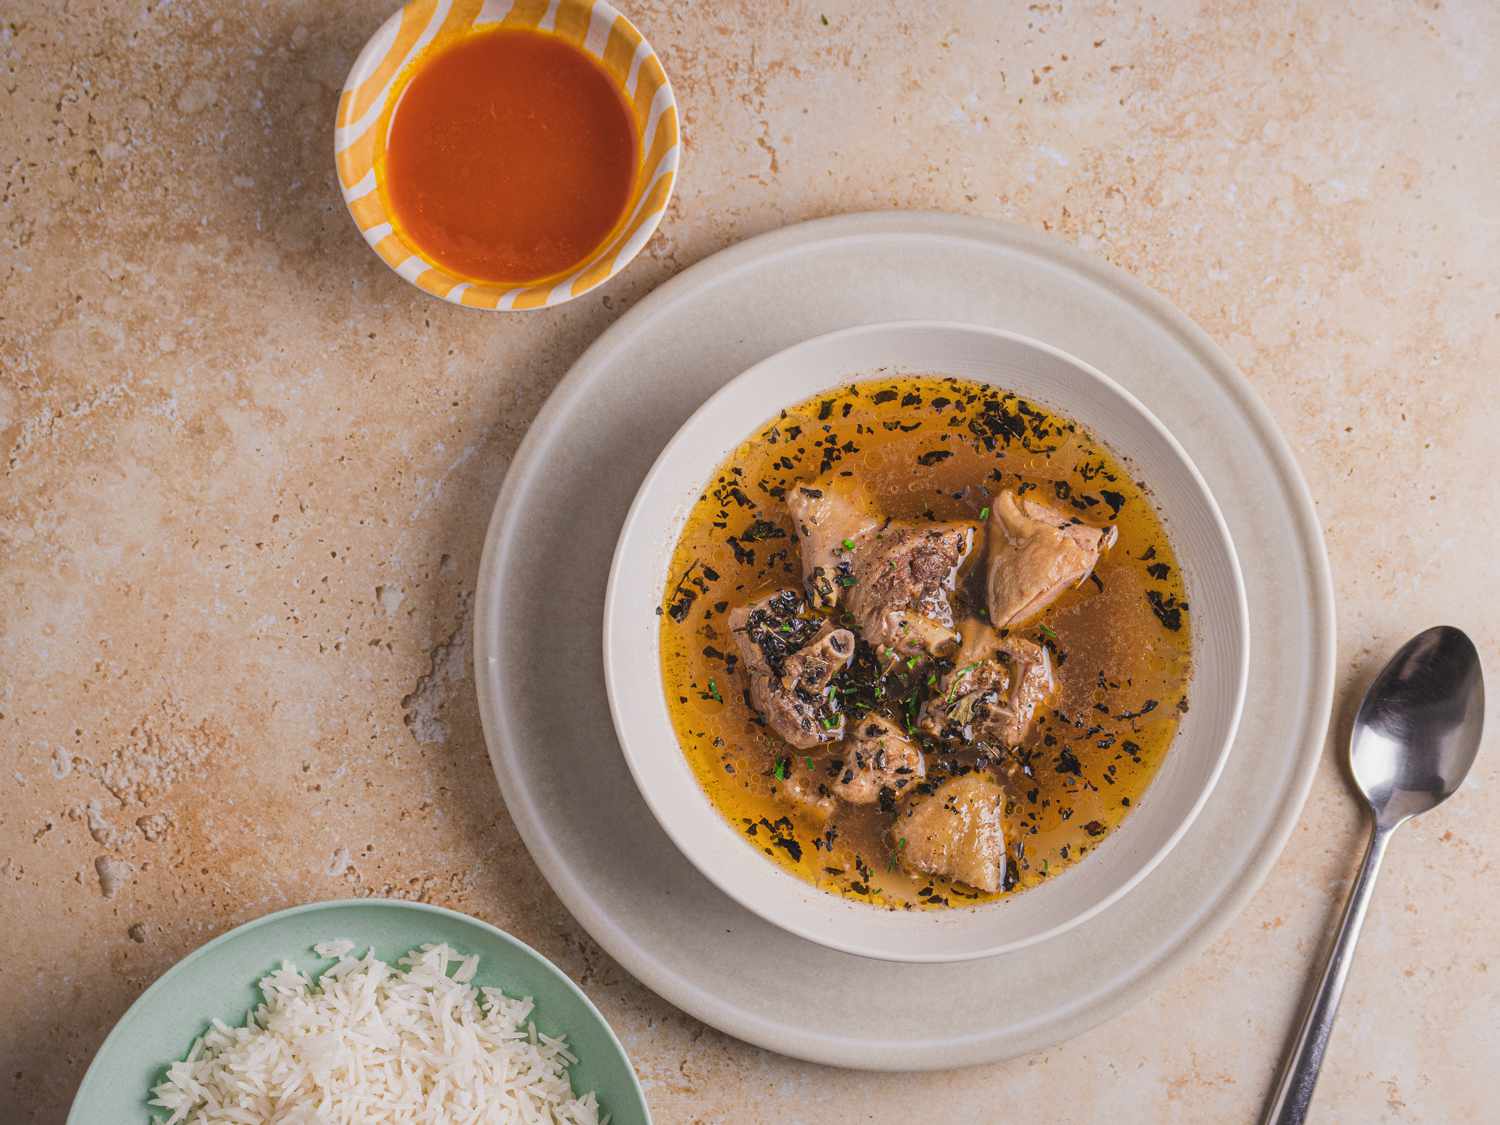 尼日利亚胡椒汤配白米饭。